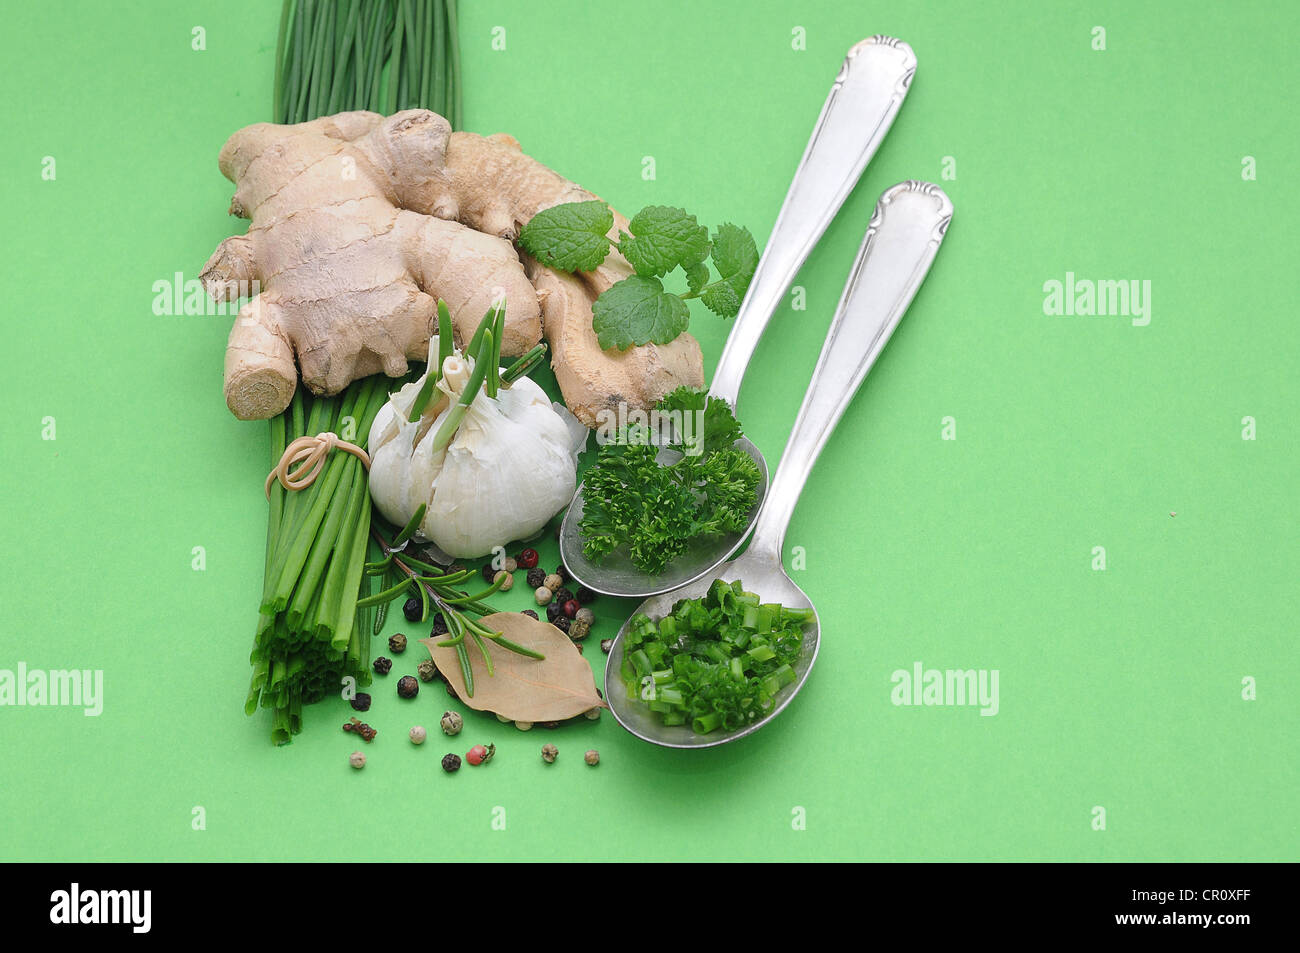 Las especias y hierbas culinarias, el jengibre, el cebollín, el ajo, el romero, el perejil, la pimienta, el laurel, la menta Foto de stock